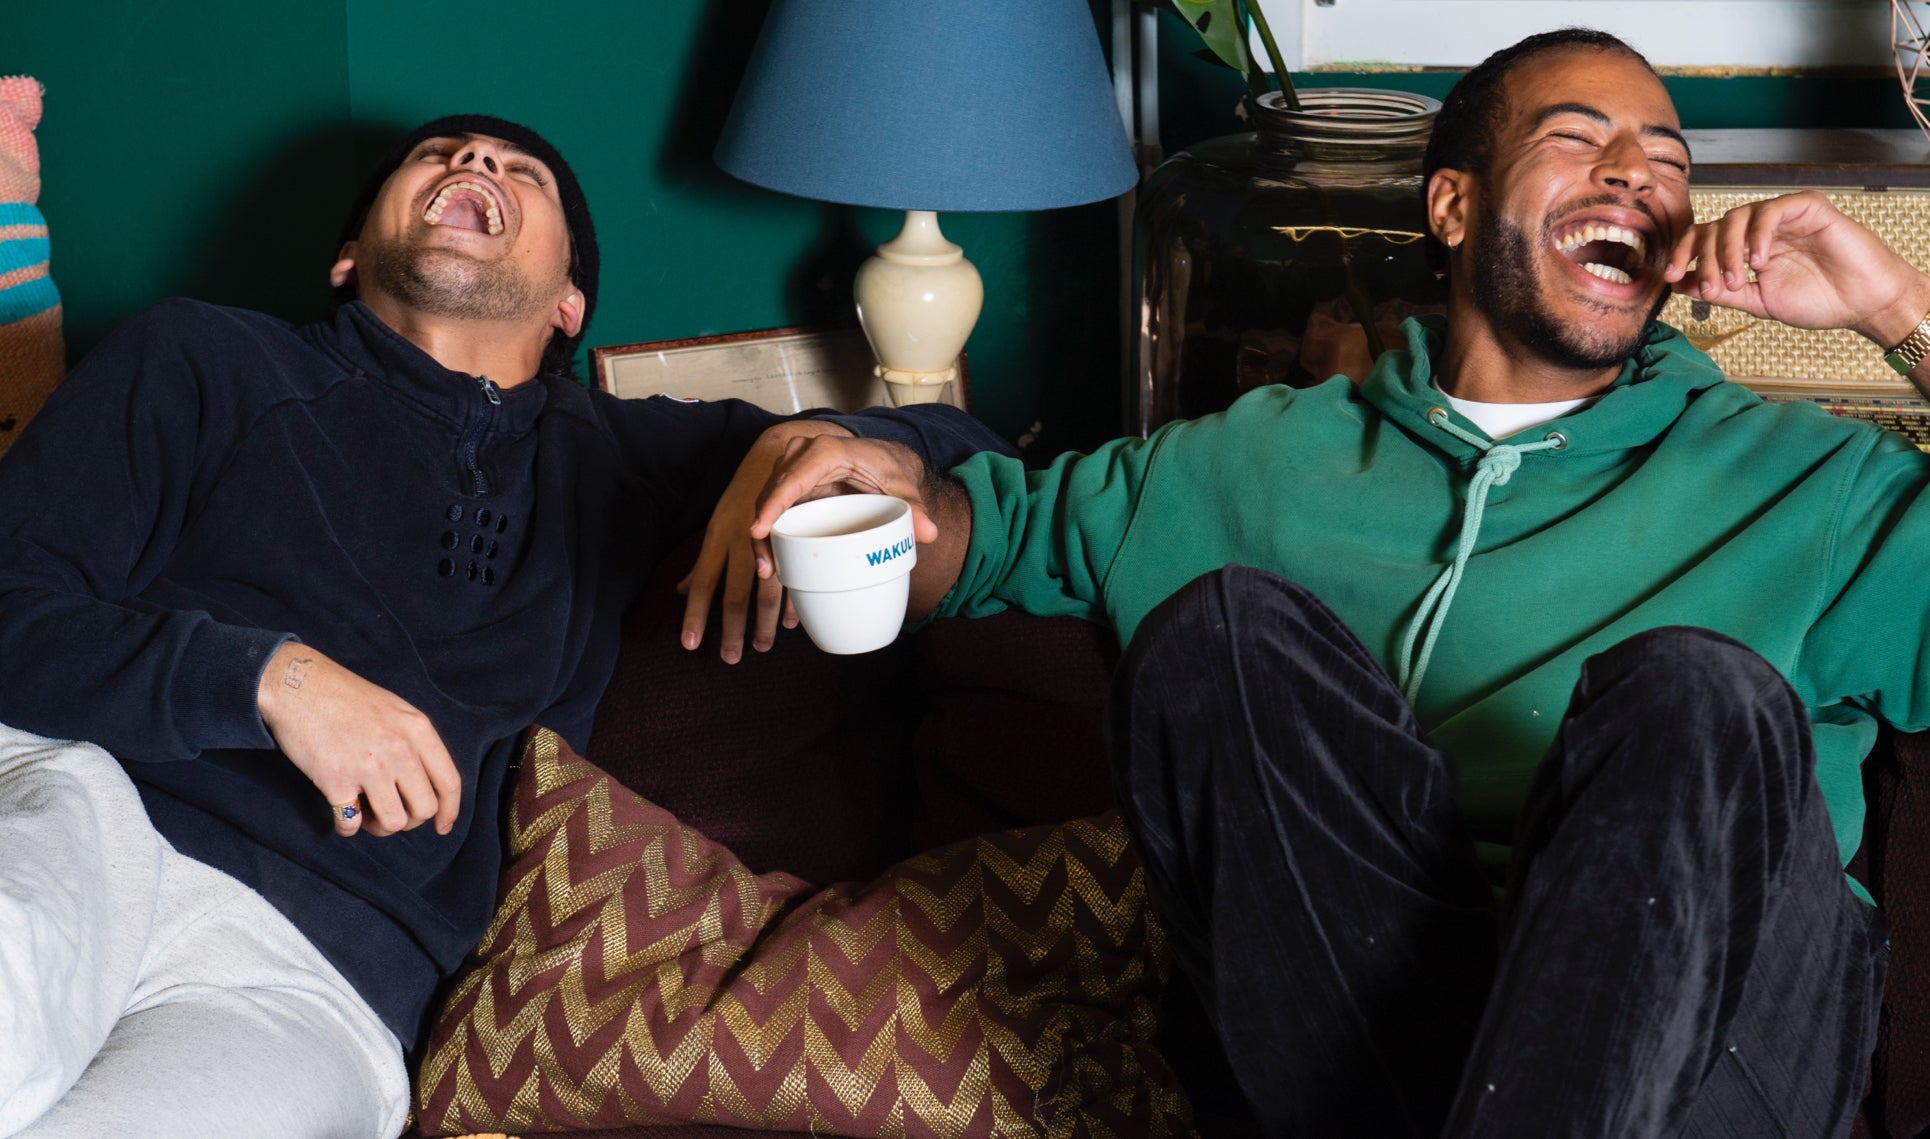 Wakuli koffie - 2 lachende jongens in truien zittend op de bank met Wakuli koffie in hun handen